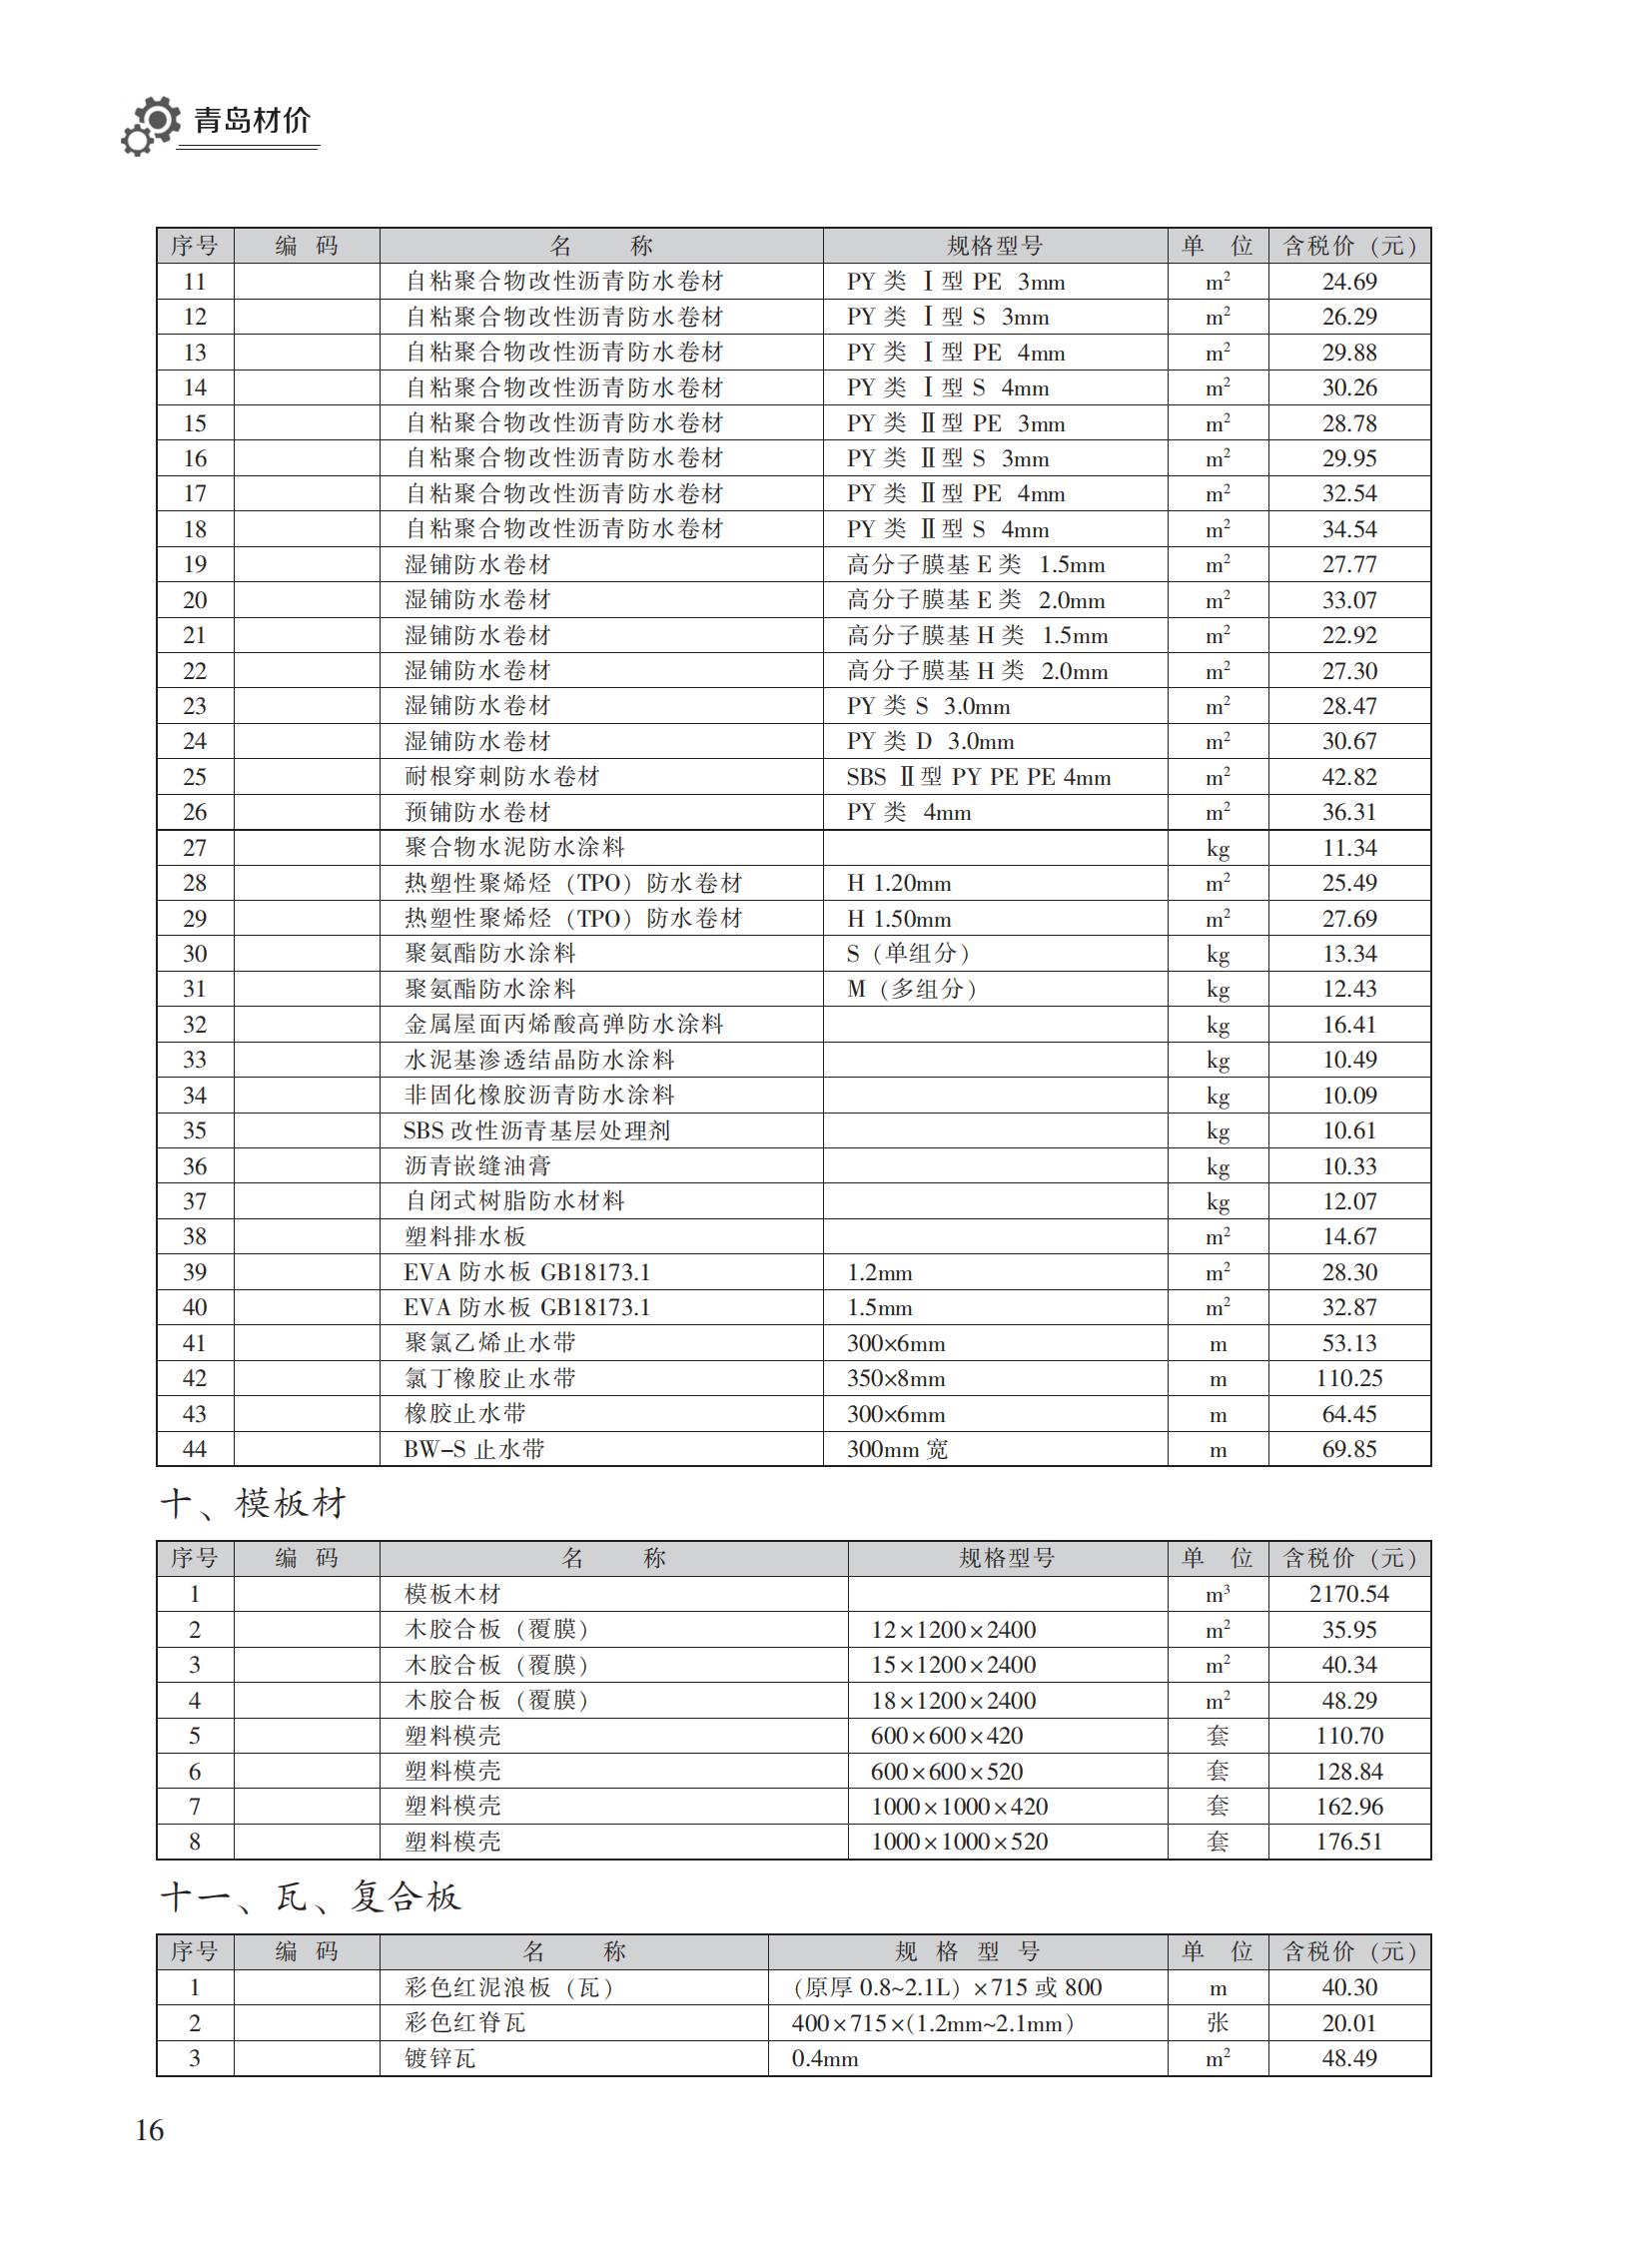 2023年3月青岛市建设工程材料价格及造价指数_15.jpg